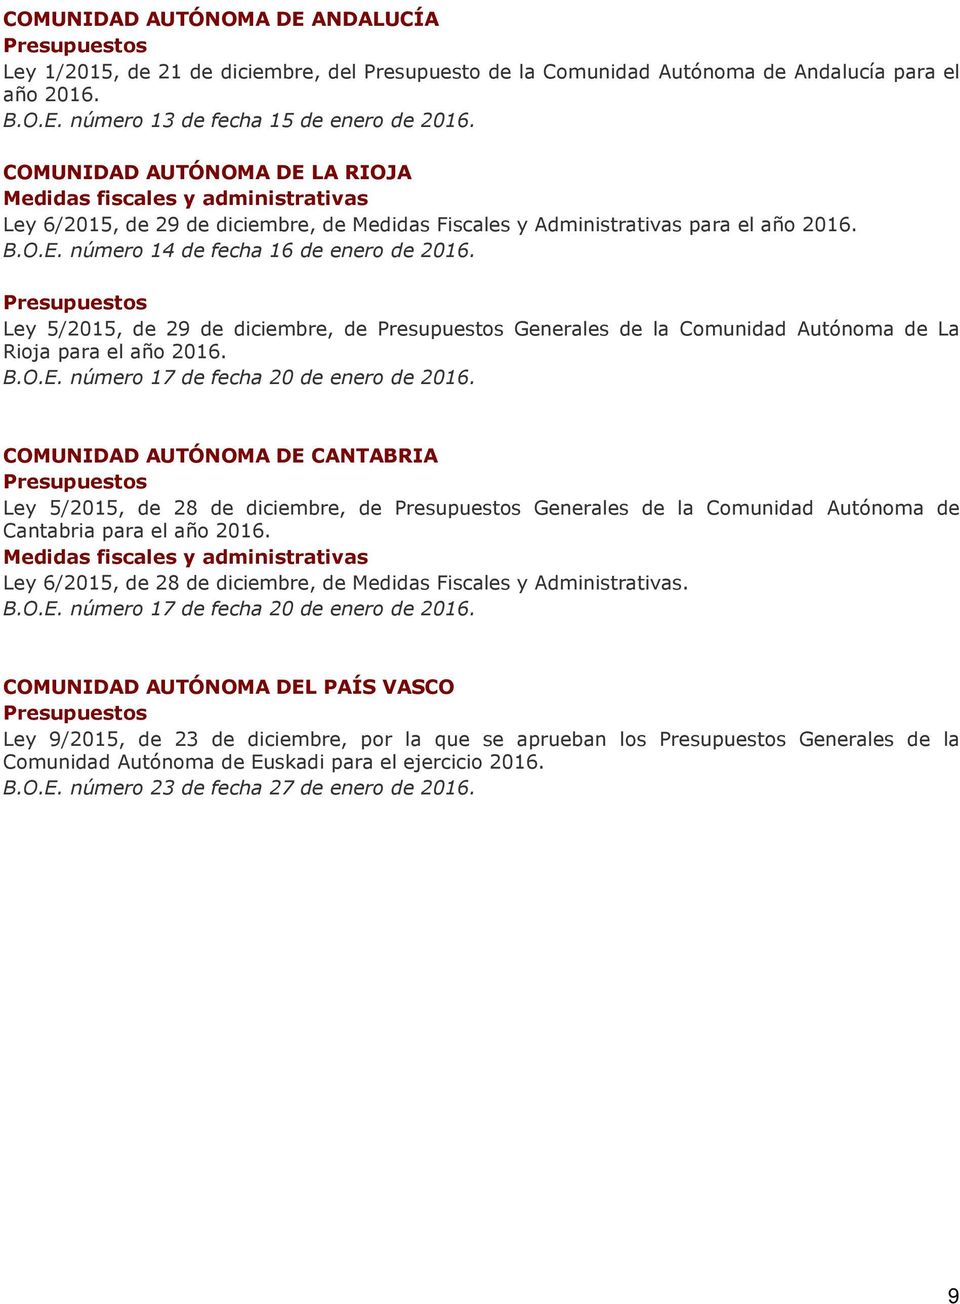 Presupuestos Ley 5/2015, de 29 de diciembre, de Presupuestos Generales de la Comunidad Autónoma de La Rioja para el año 2016. B.O.E. número 17 de fecha 20 de enero de 2016.